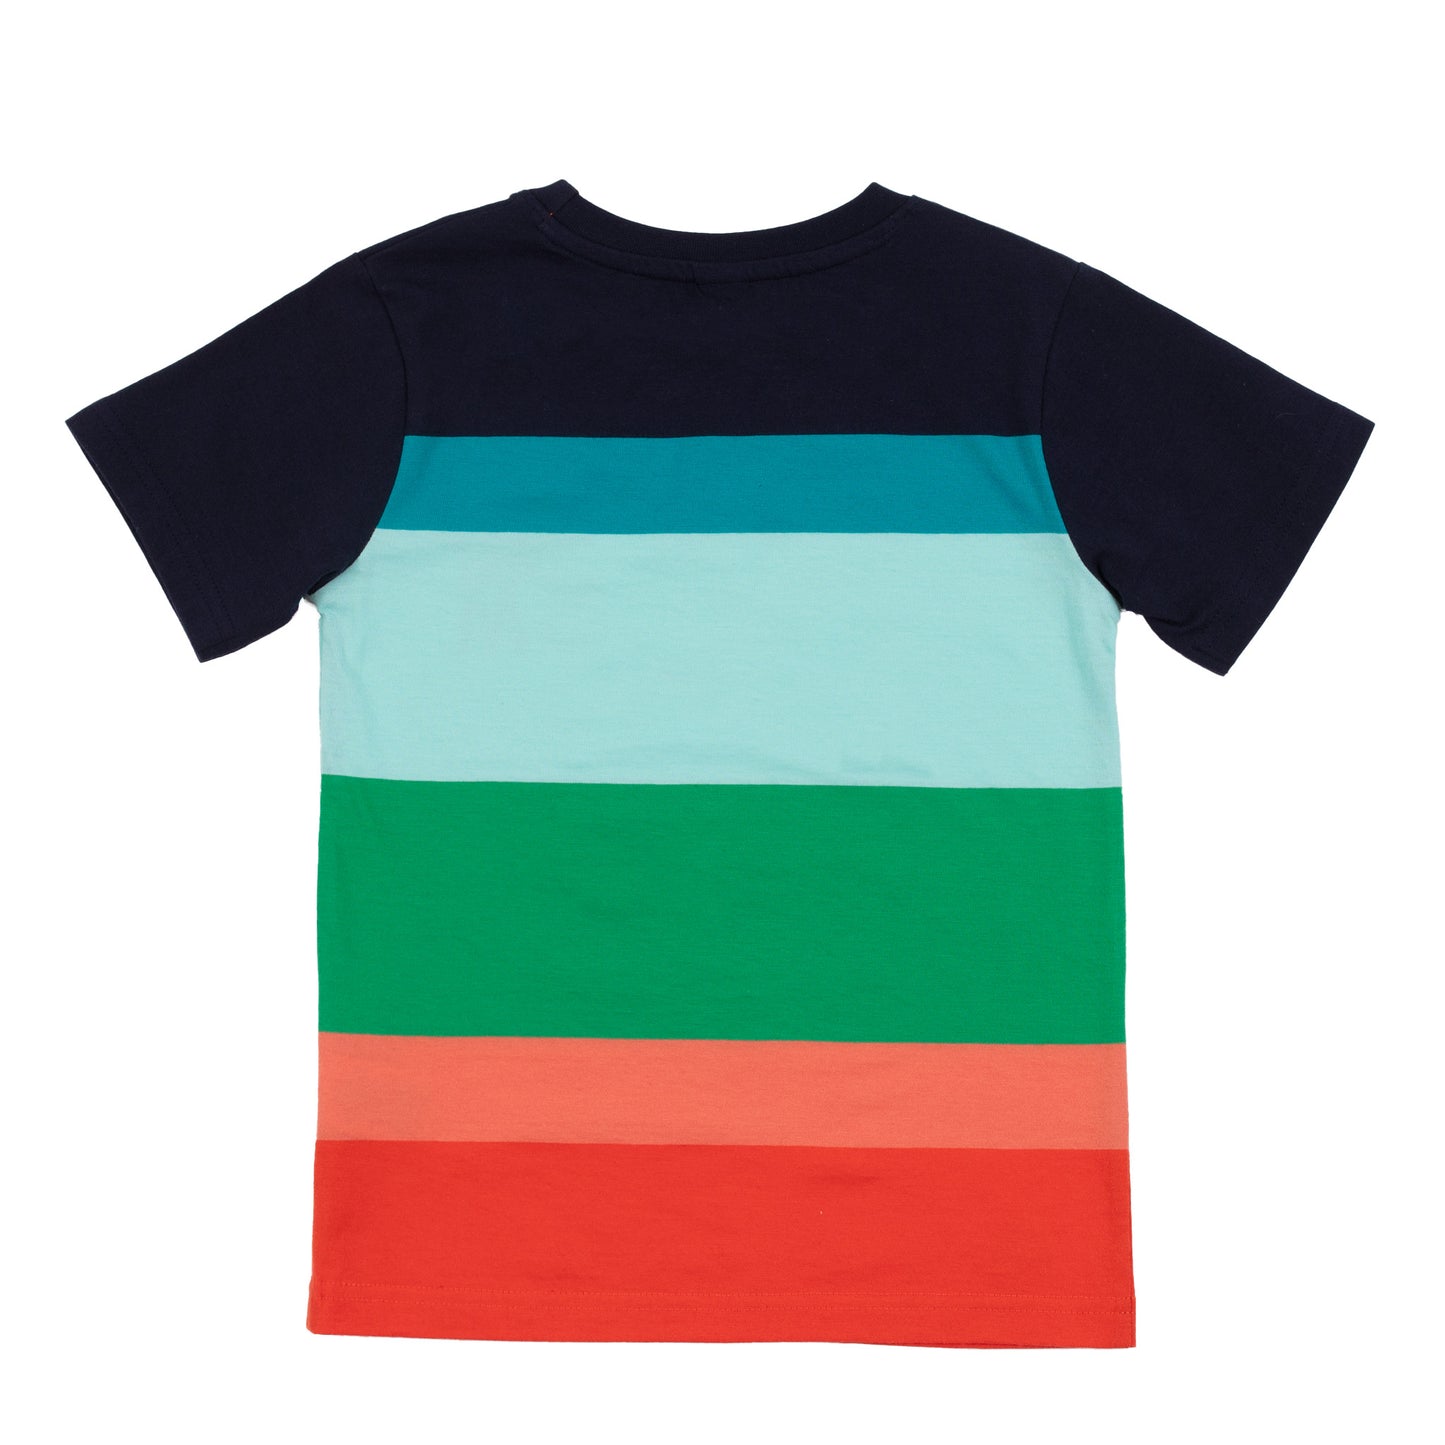 T-shirt à rayures - Party piscine - S2403-06 - 2 à 10 ans